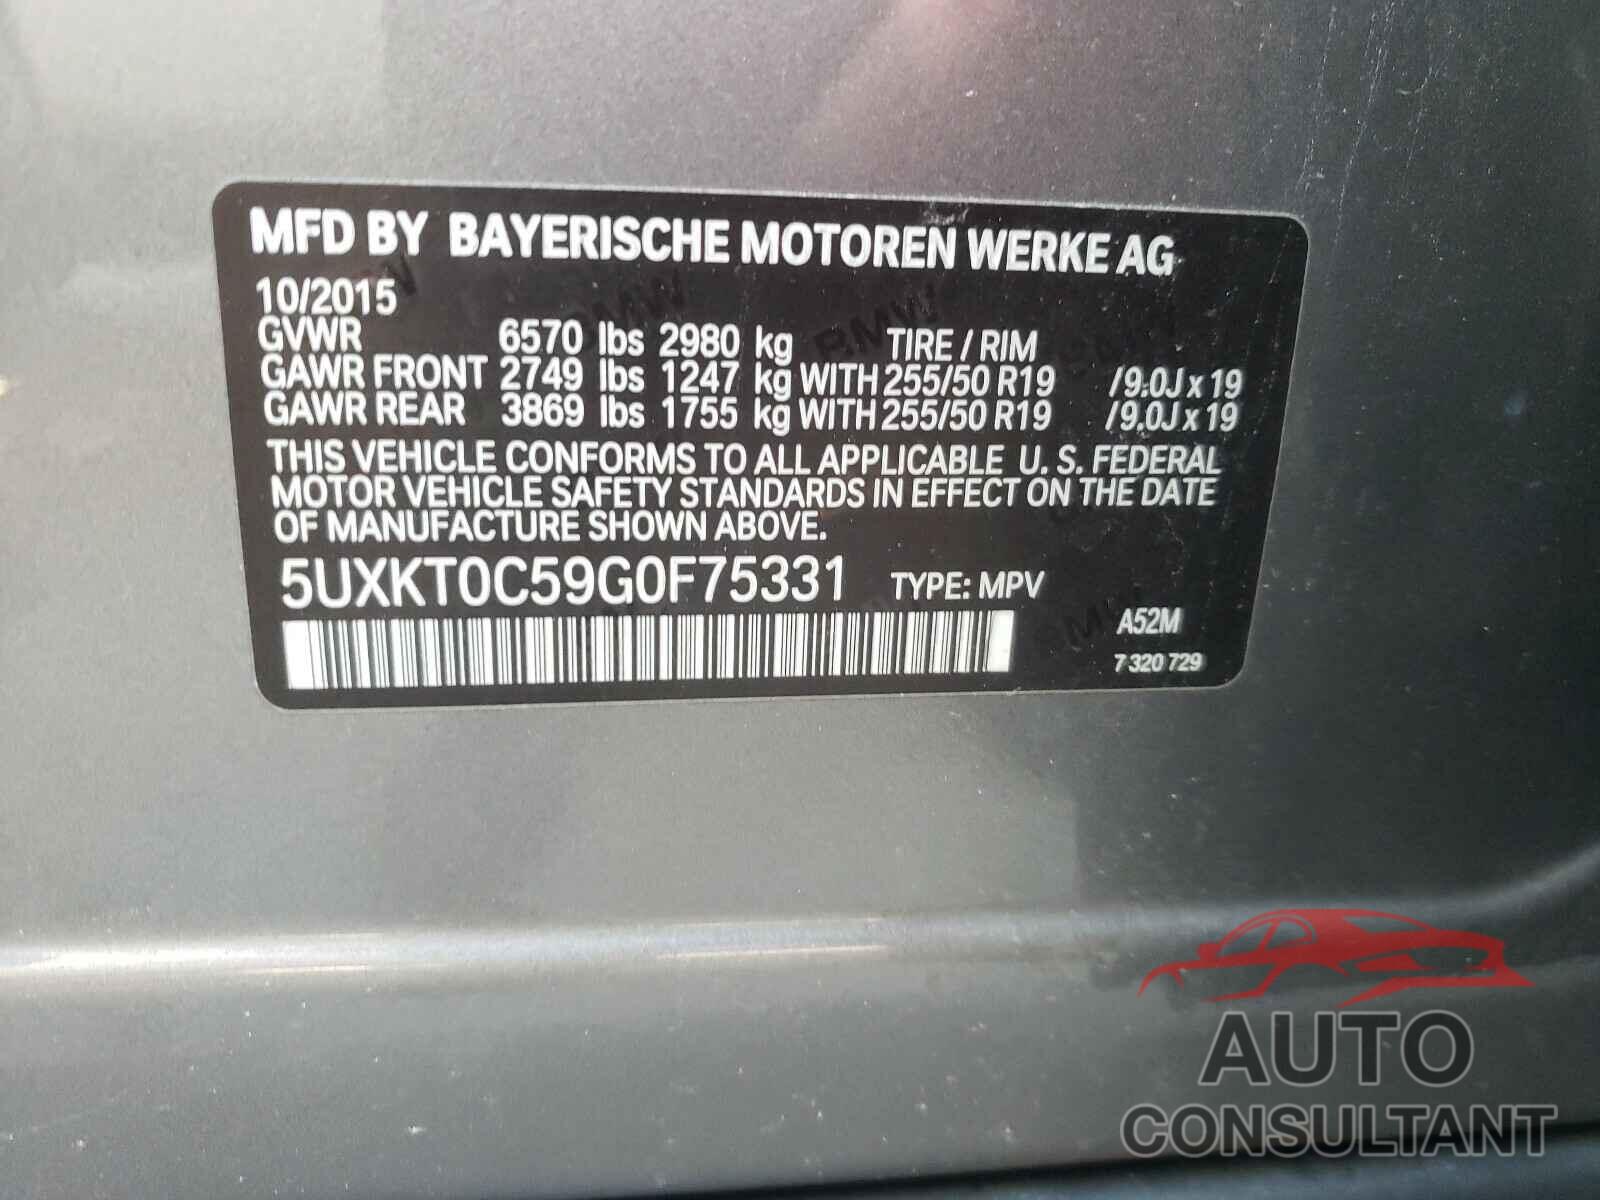 BMW X5 2016 - 5UXKT0C59G0F75331